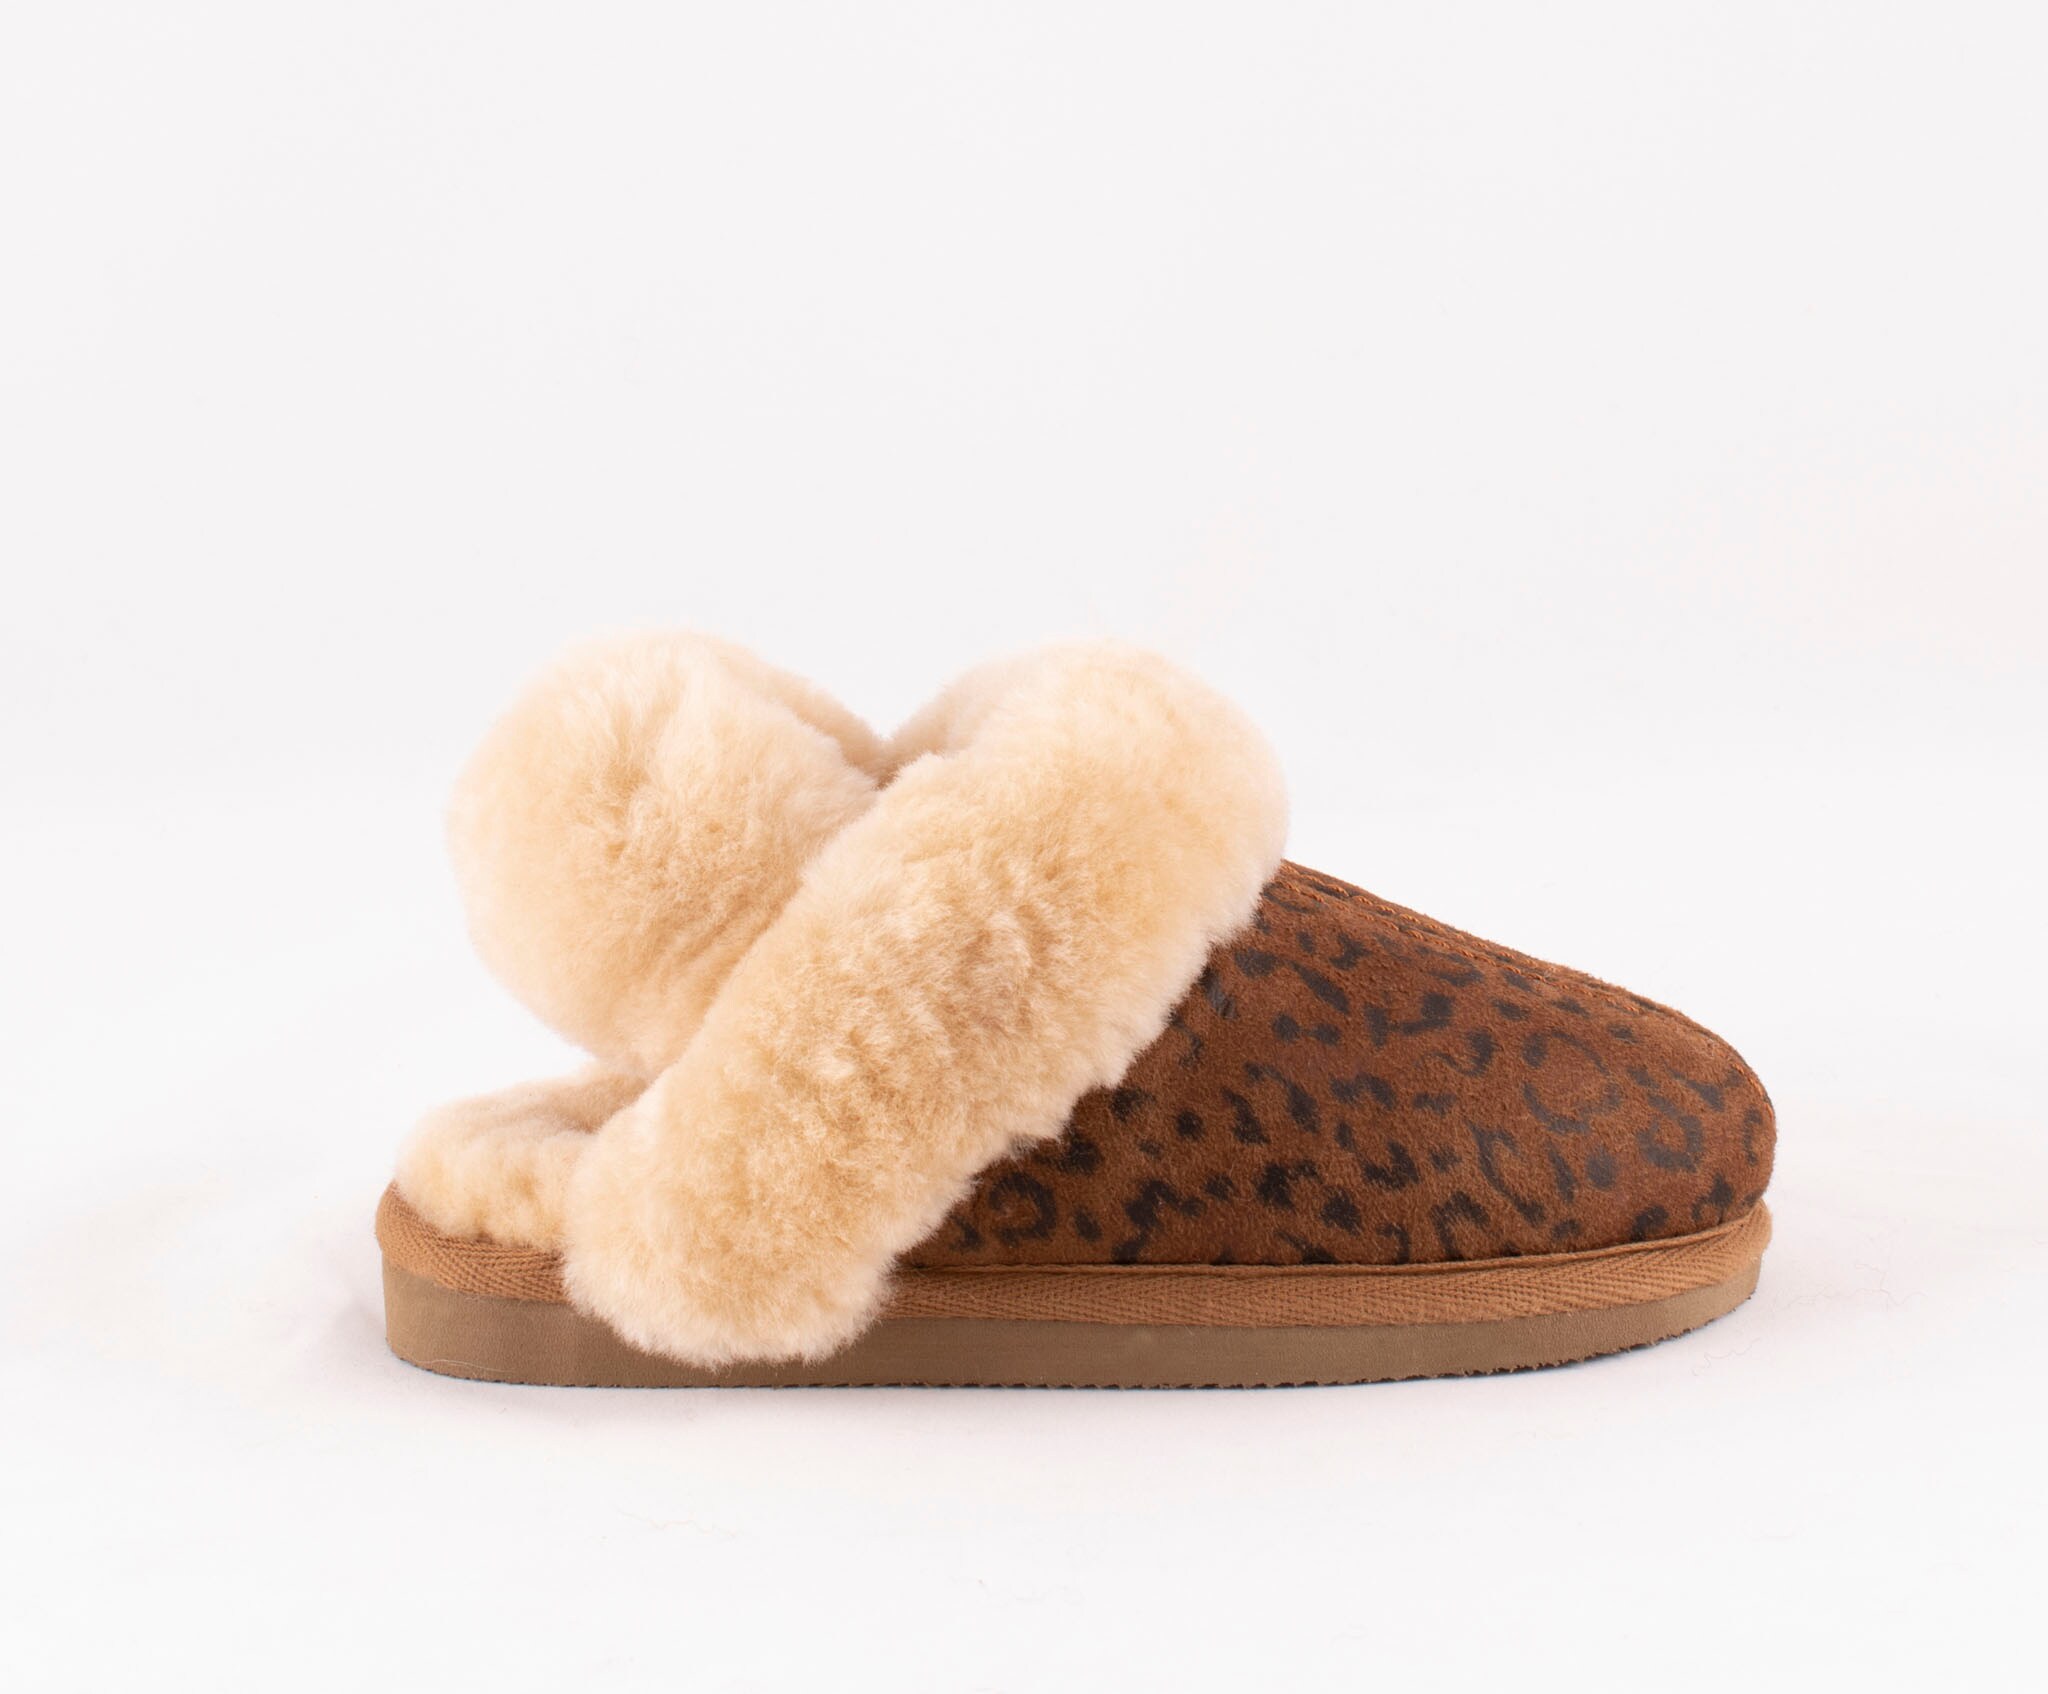 Helsingborg slippers